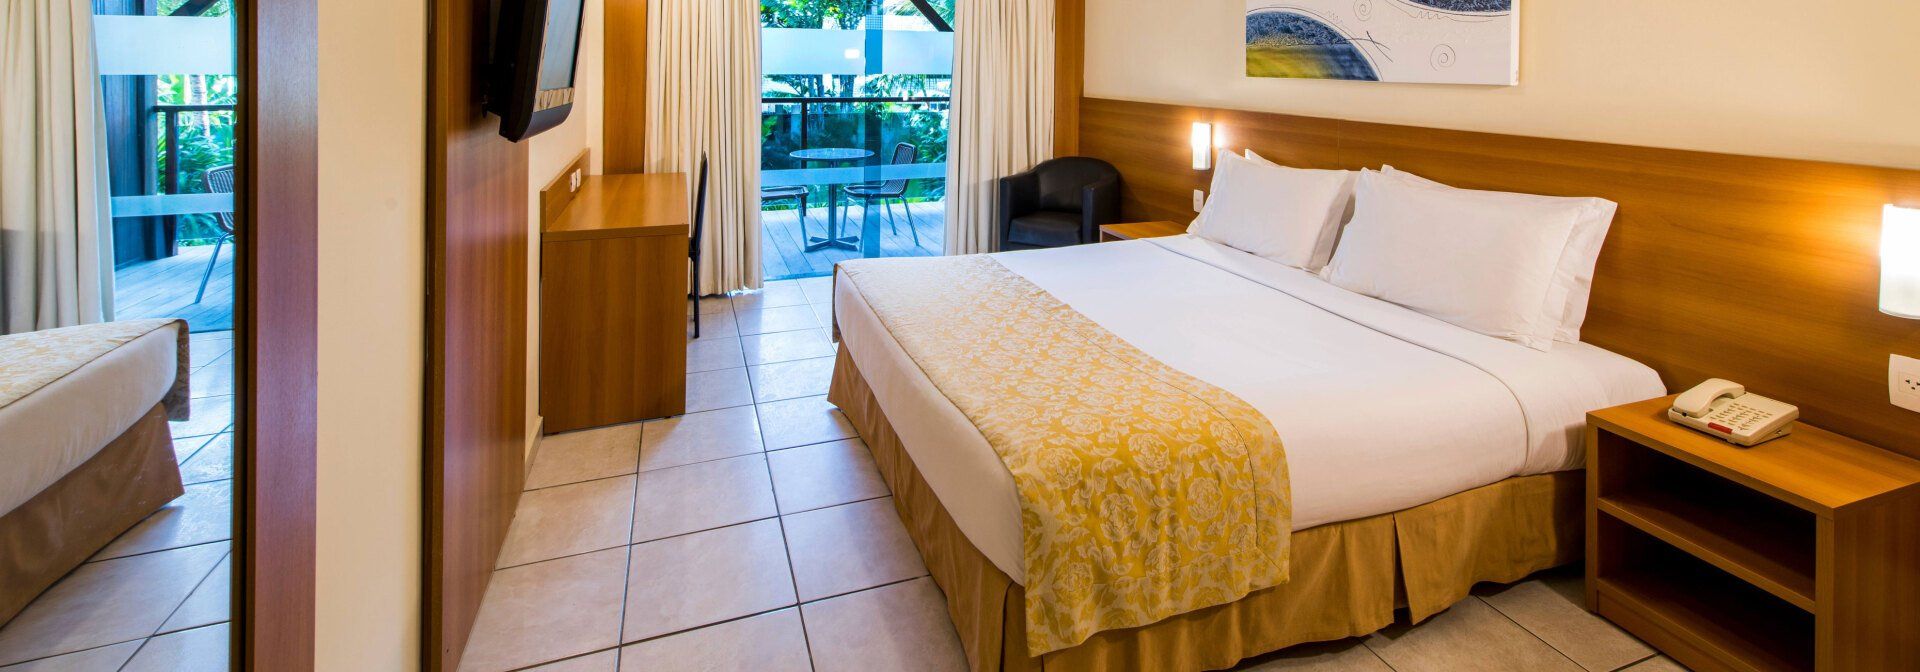 Praiamar Natal Hotel & Convention - Hotéis em Natal